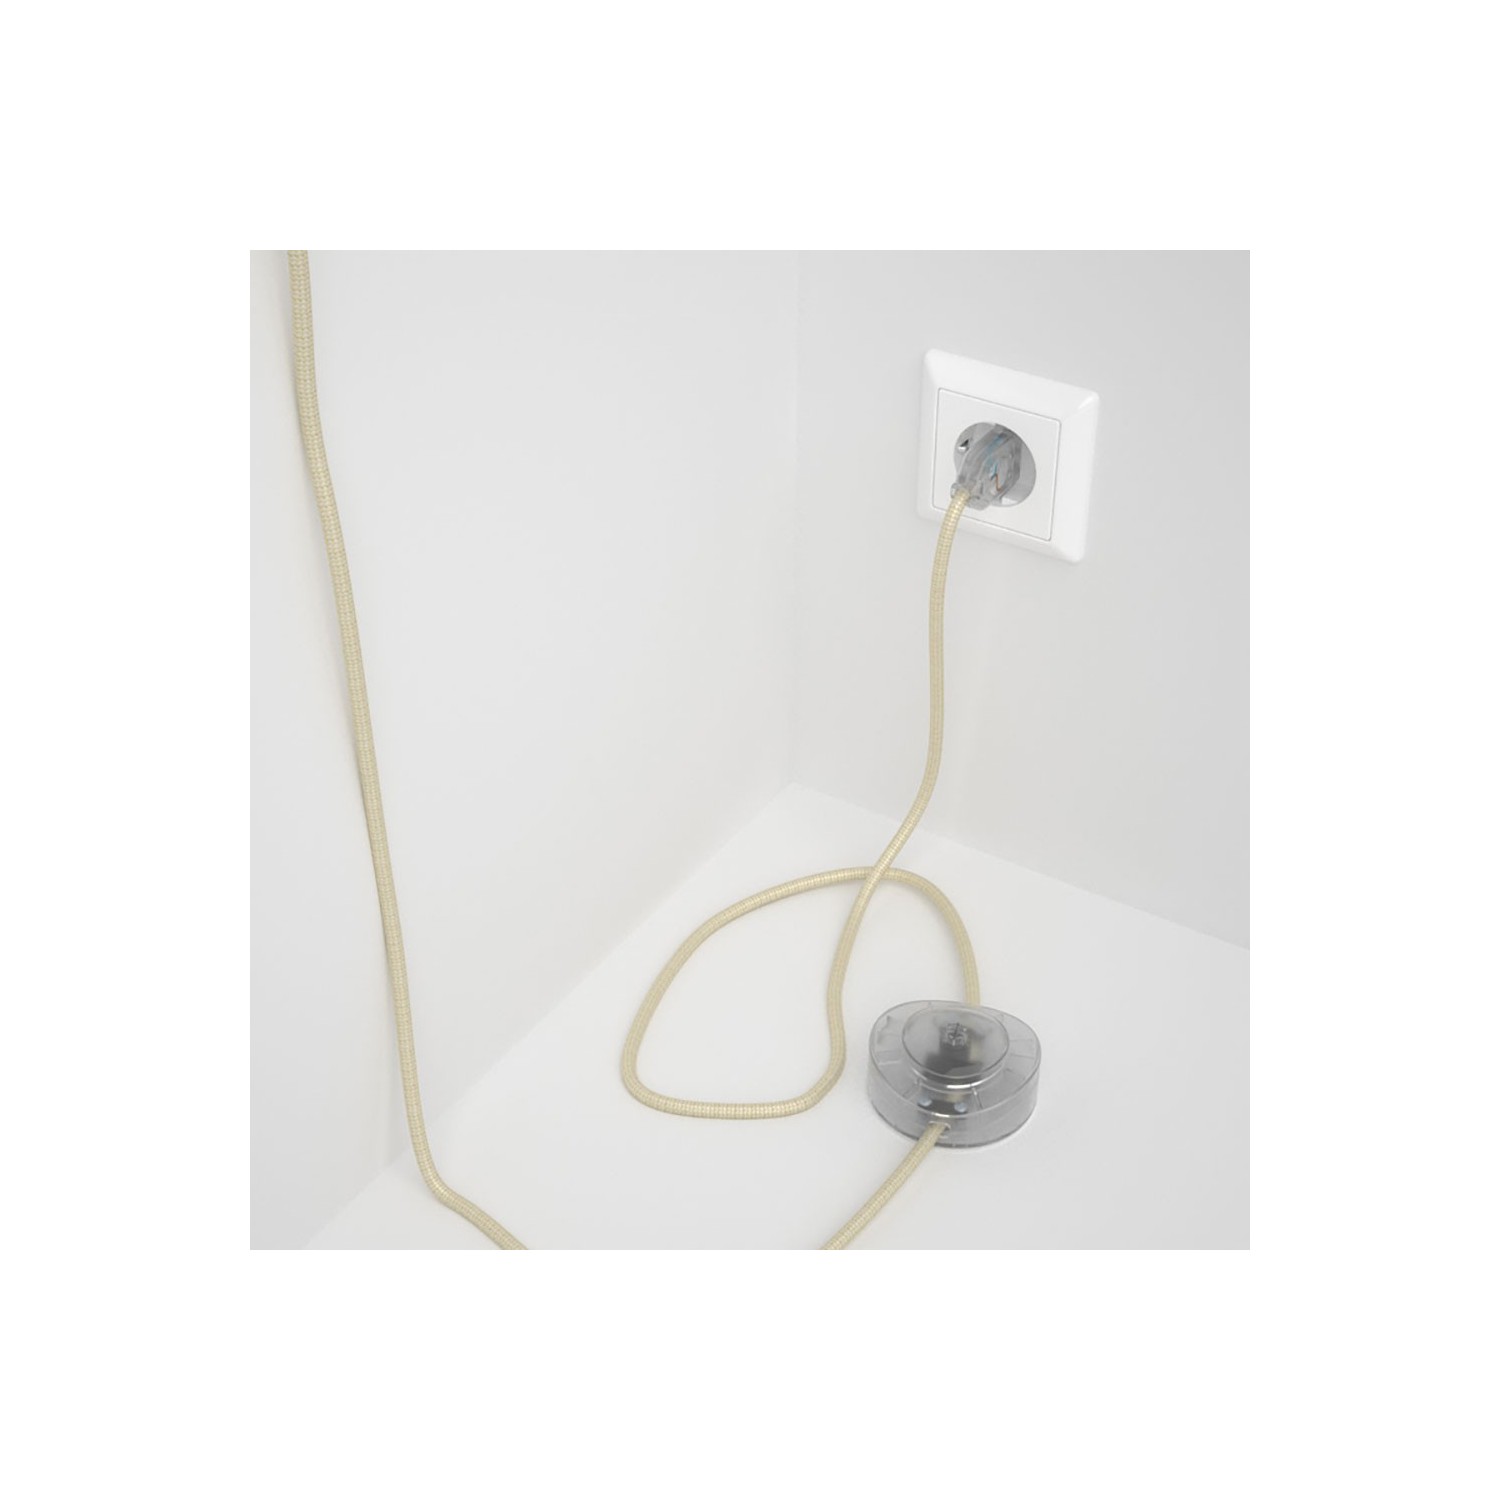 Cordon pour lampadaire, câble RM00 Effet Soie Ivoire 3 m. Choisissez la couleur de la fiche et de l'interrupteur!